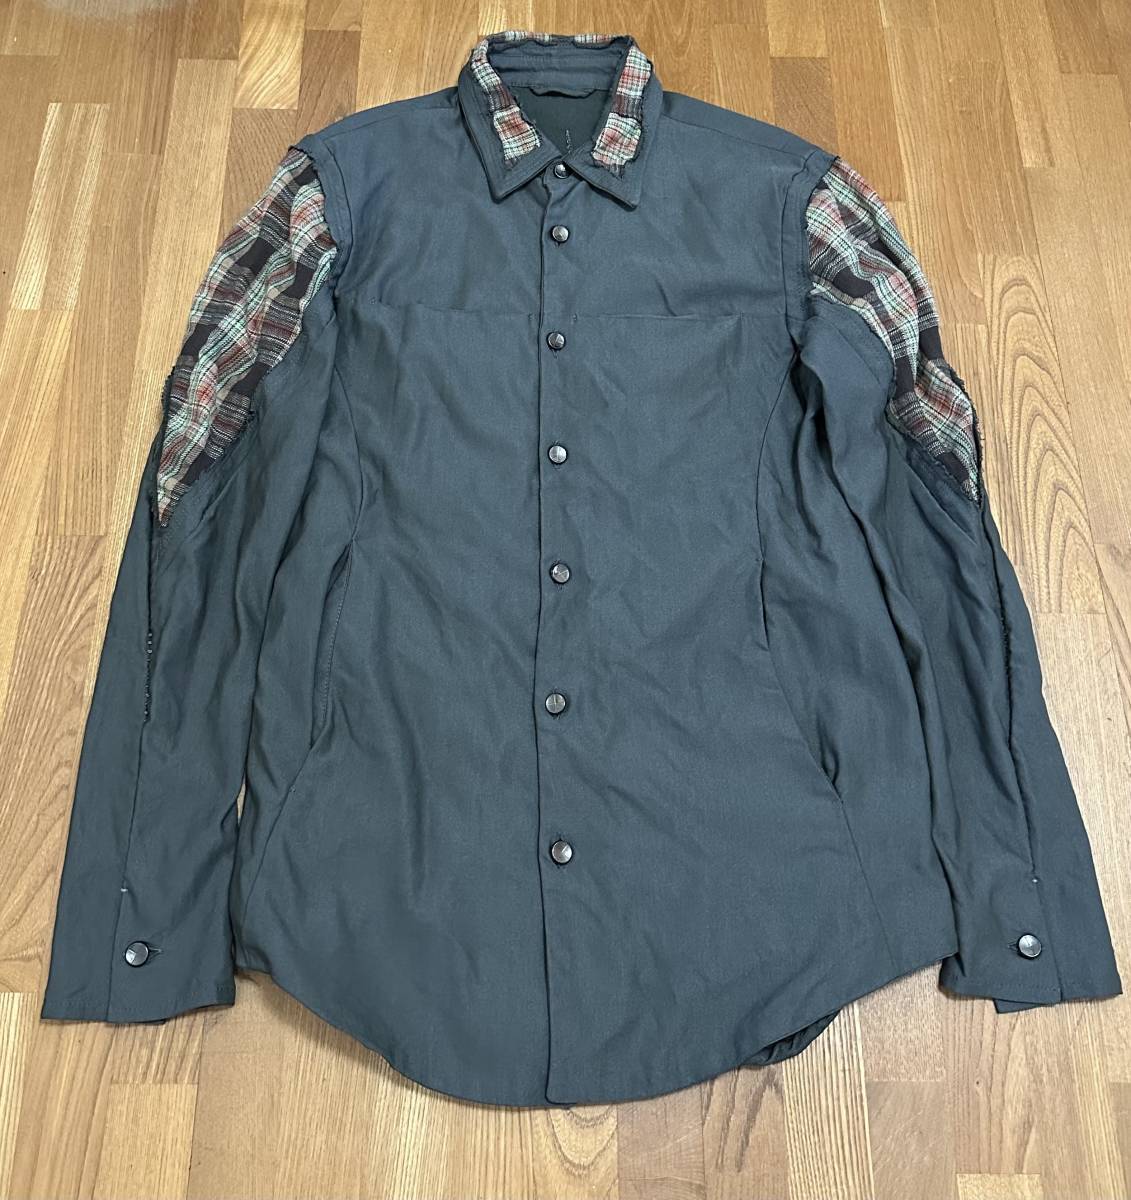 未使用品 19SS incarnation Olive × Plaid Crosscut Shirt Jacket / SIZE S (OLIVE/CHECK)